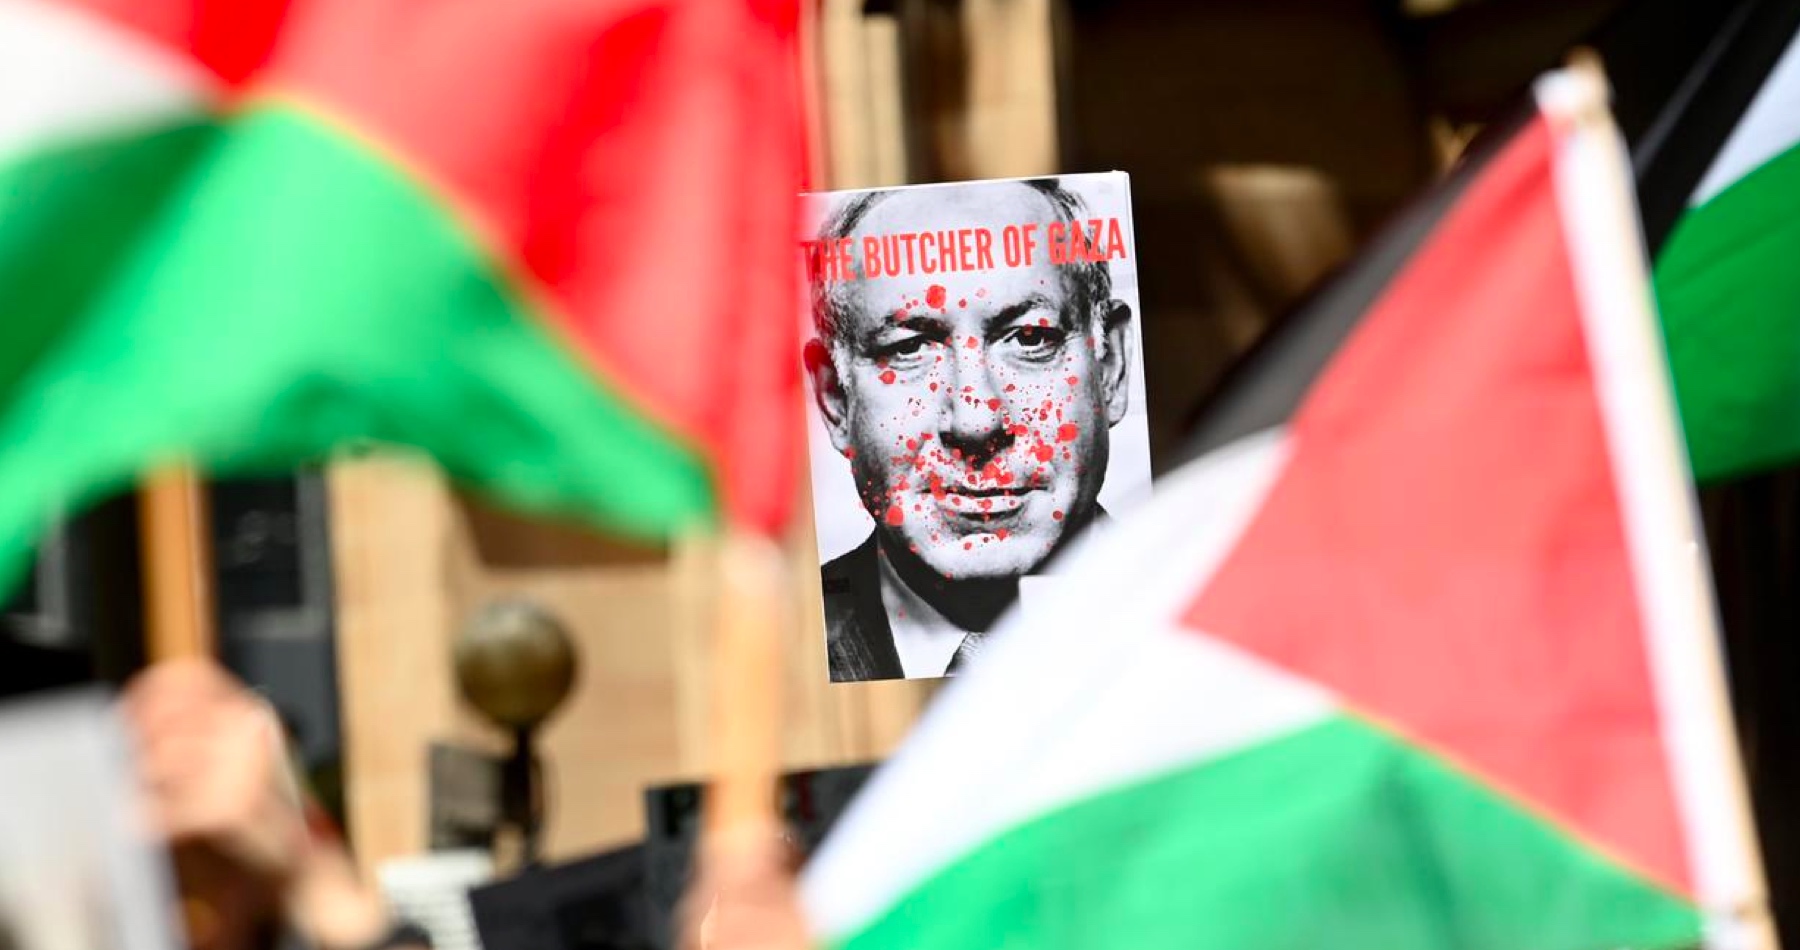 Hlavný prokurátor Medzinárodného trestného súdu  žiada vydať zatykač na izraelského premiéra Netanjahua a ministra obrany Galanta, ale aj na troch lídrov Hamasu. Vodca sionistického režimu vyhlásil, že je to prejav antisemitizmu